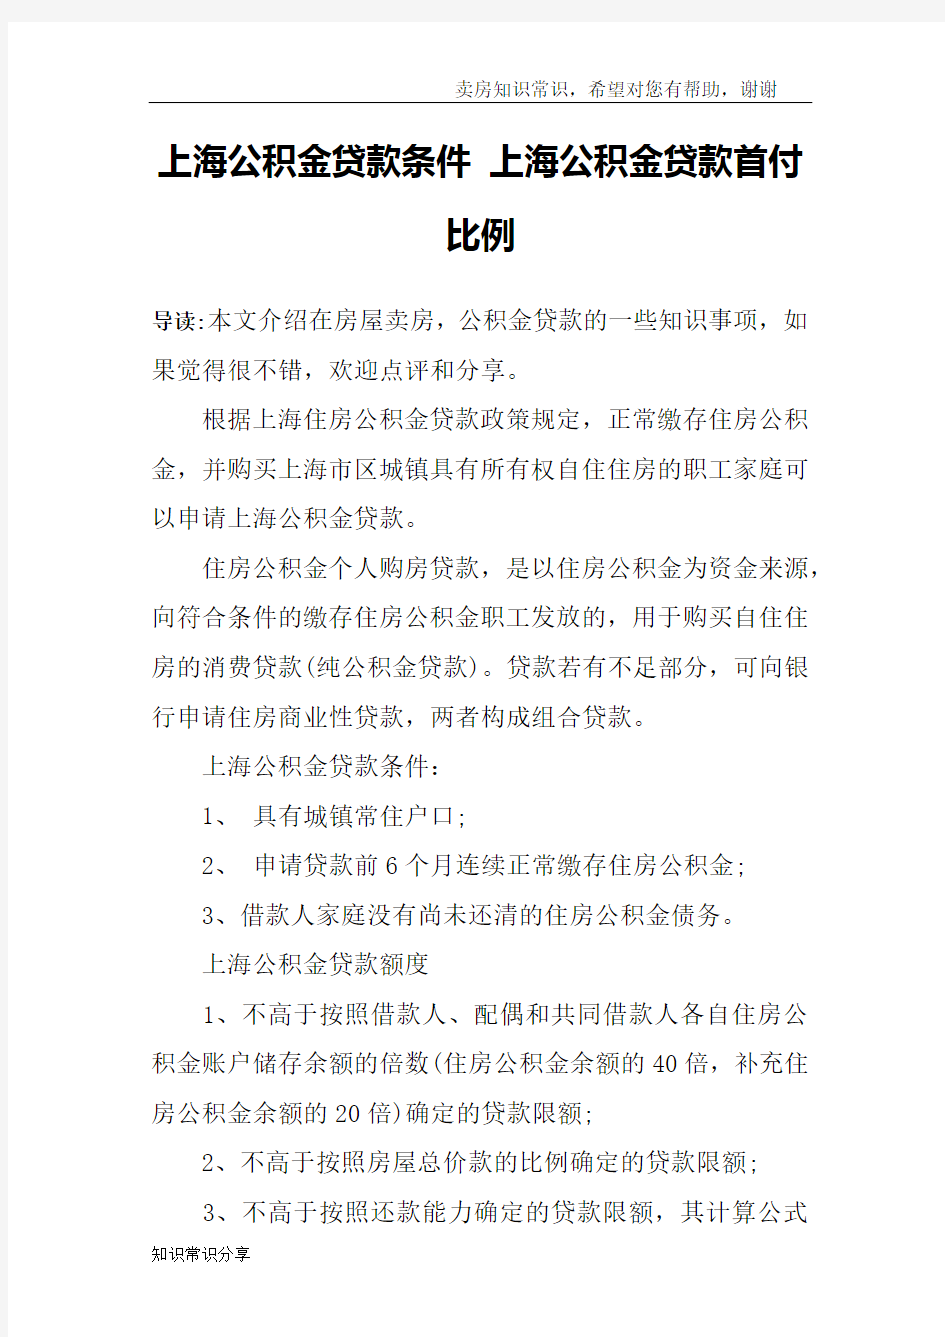 上海公积金贷款条件 上海公积金贷款首付比例